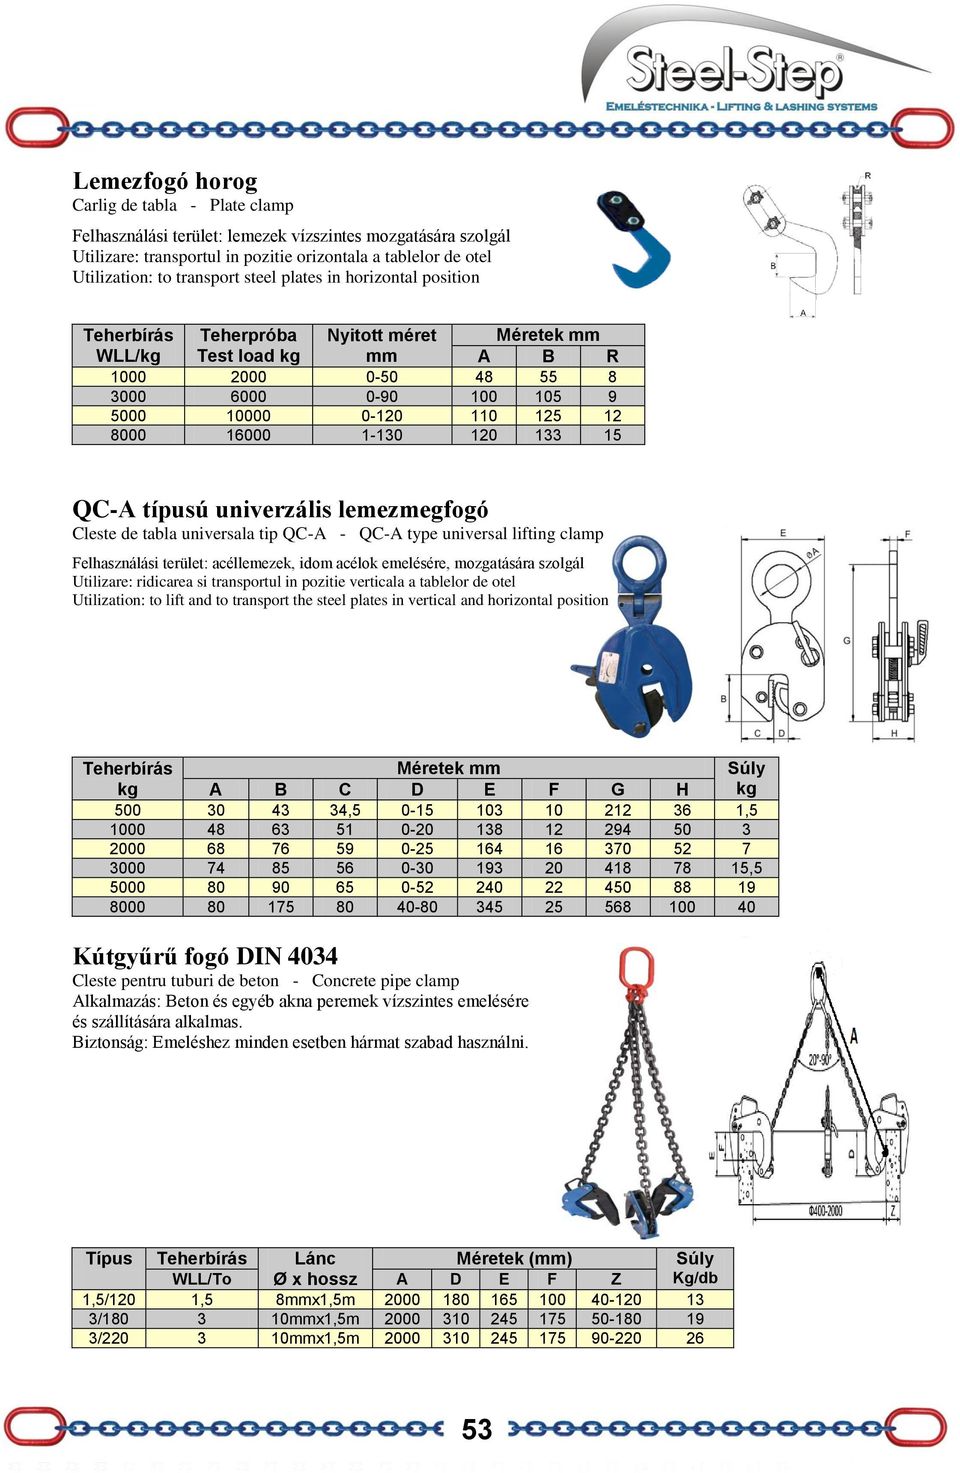 típusú univerzális lemezmegfogó Cleste de tabla universala tip QC-A - QC-A type universal lifting clamp Felhasználási terület: acéllemezek, idom acélok emelésére, mozgatására szolgál Utilizare: